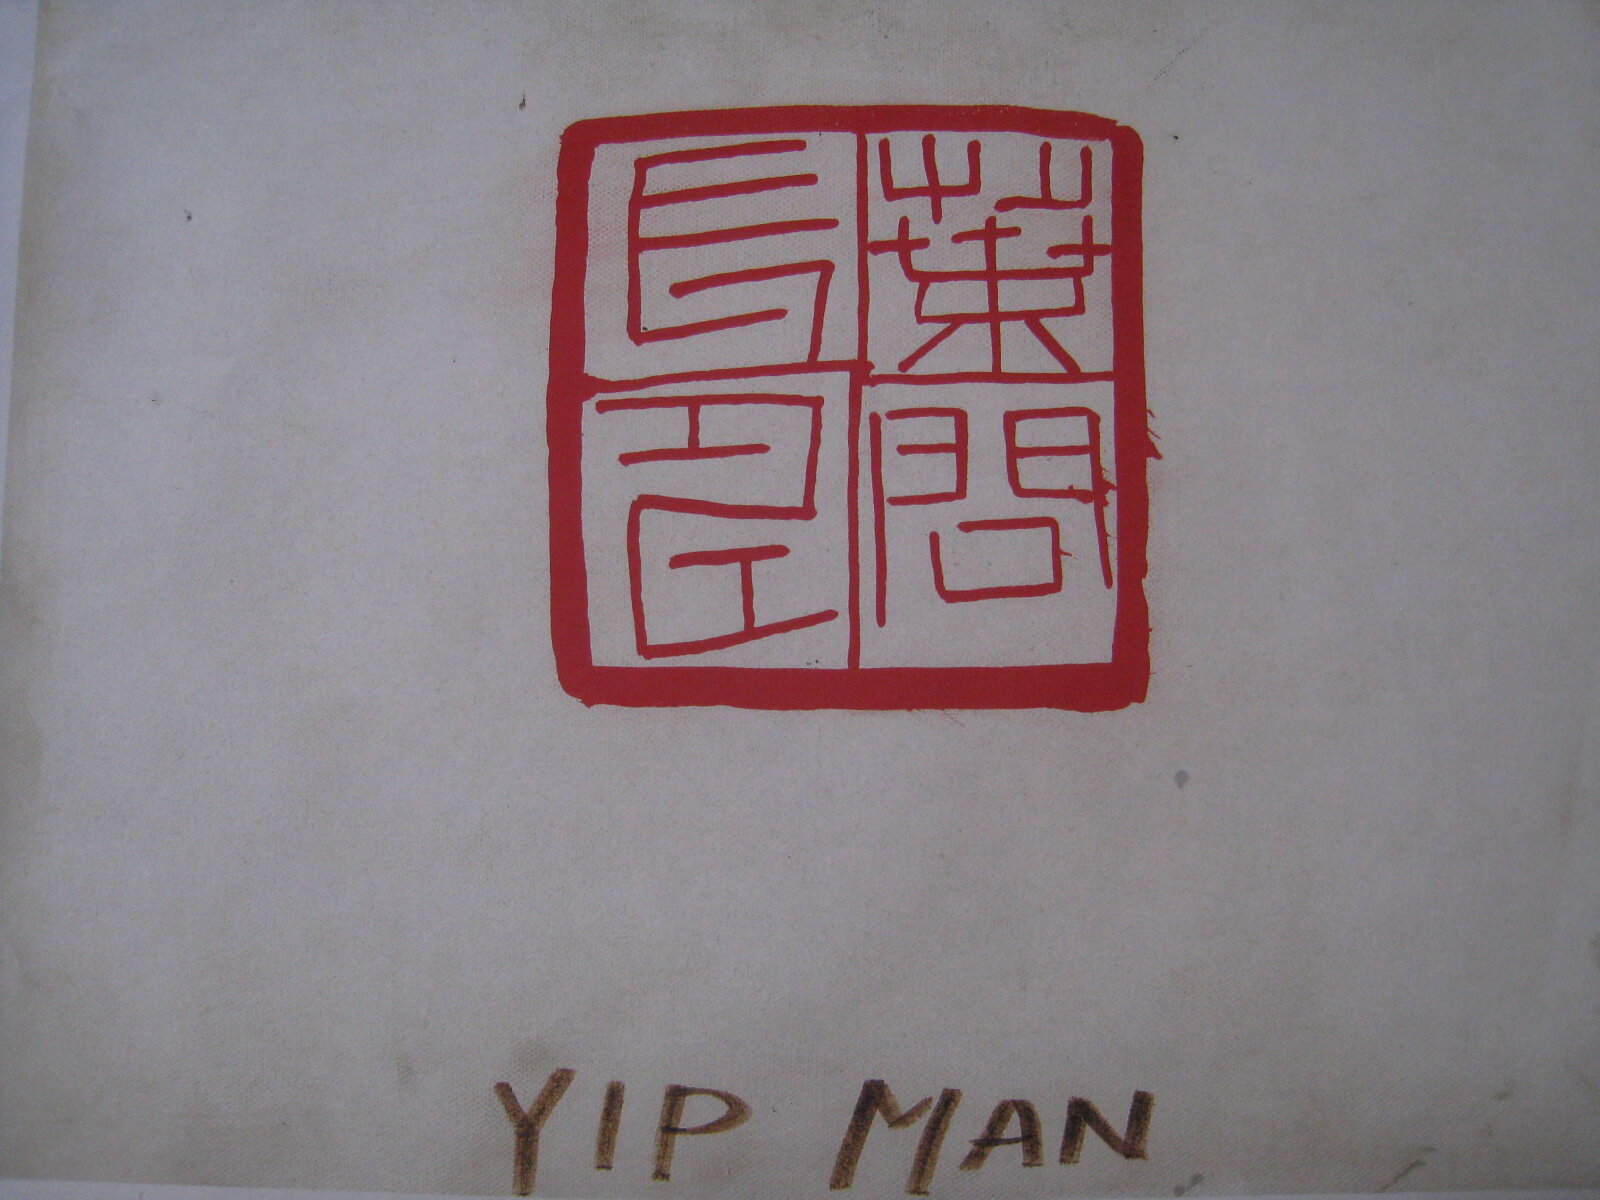 Ip Man (Yip Man)